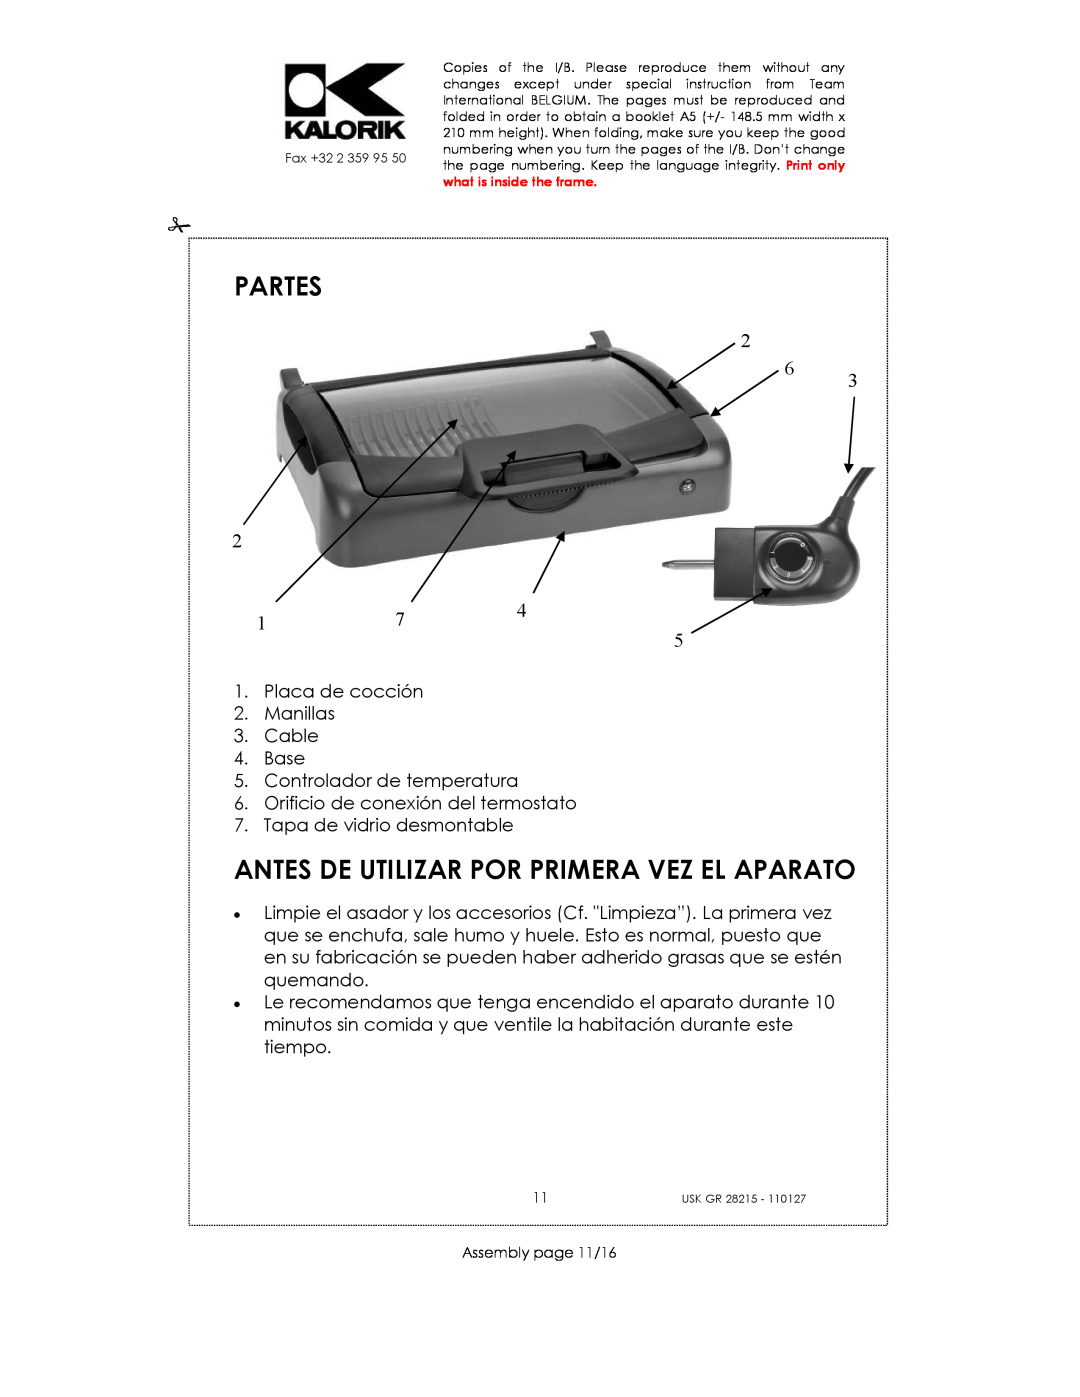 Kalorik USK GR 28215 manual Partes, Antes De Utilizar Por Primera Vez El Aparato, 2 6 